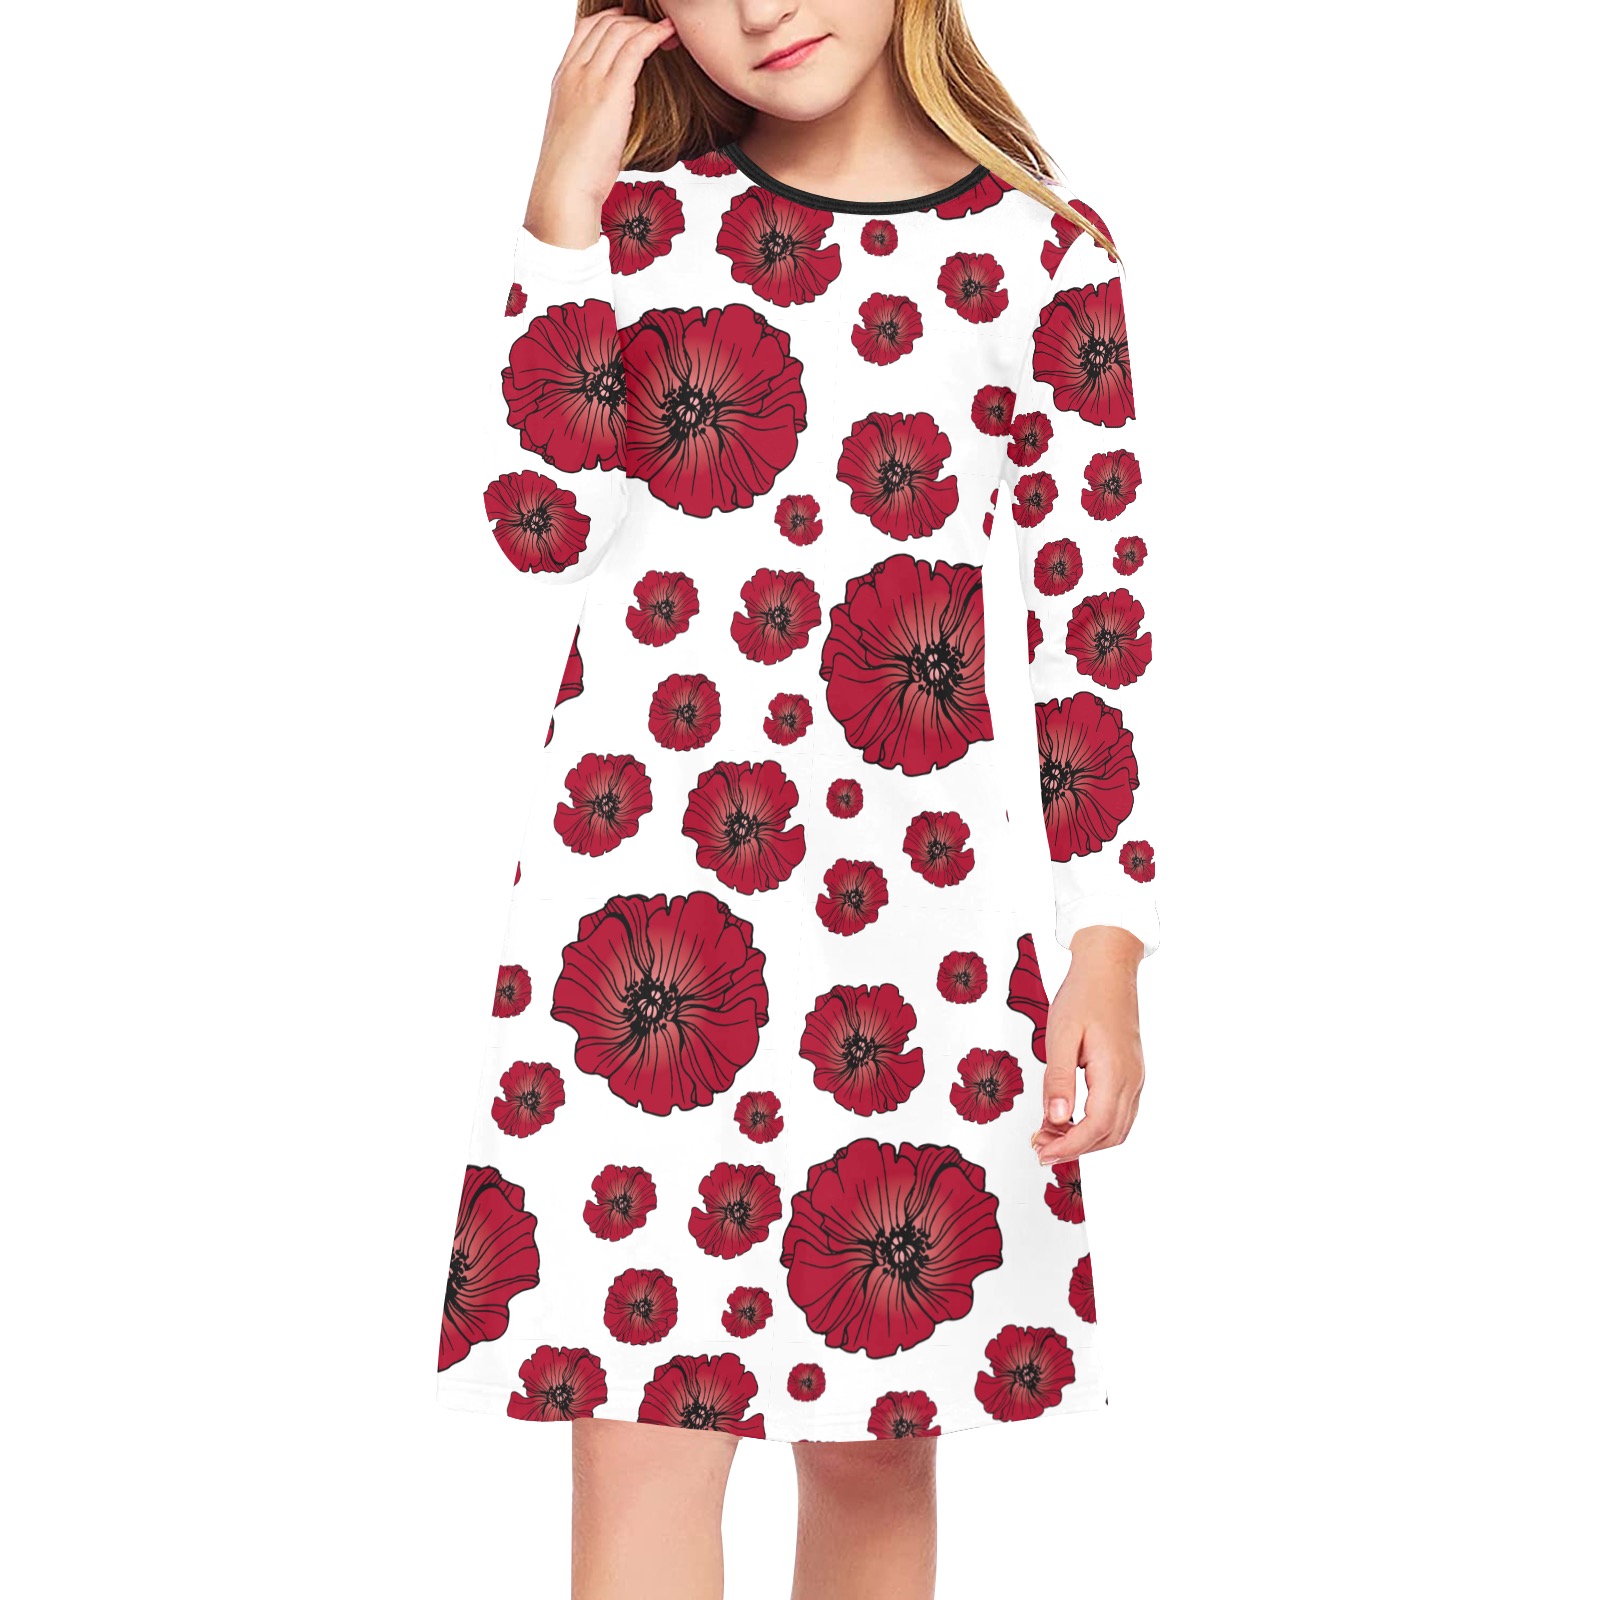 Ô Scarlet Poppy Scatter Girls' Long Sleeve Dress (Model D59)